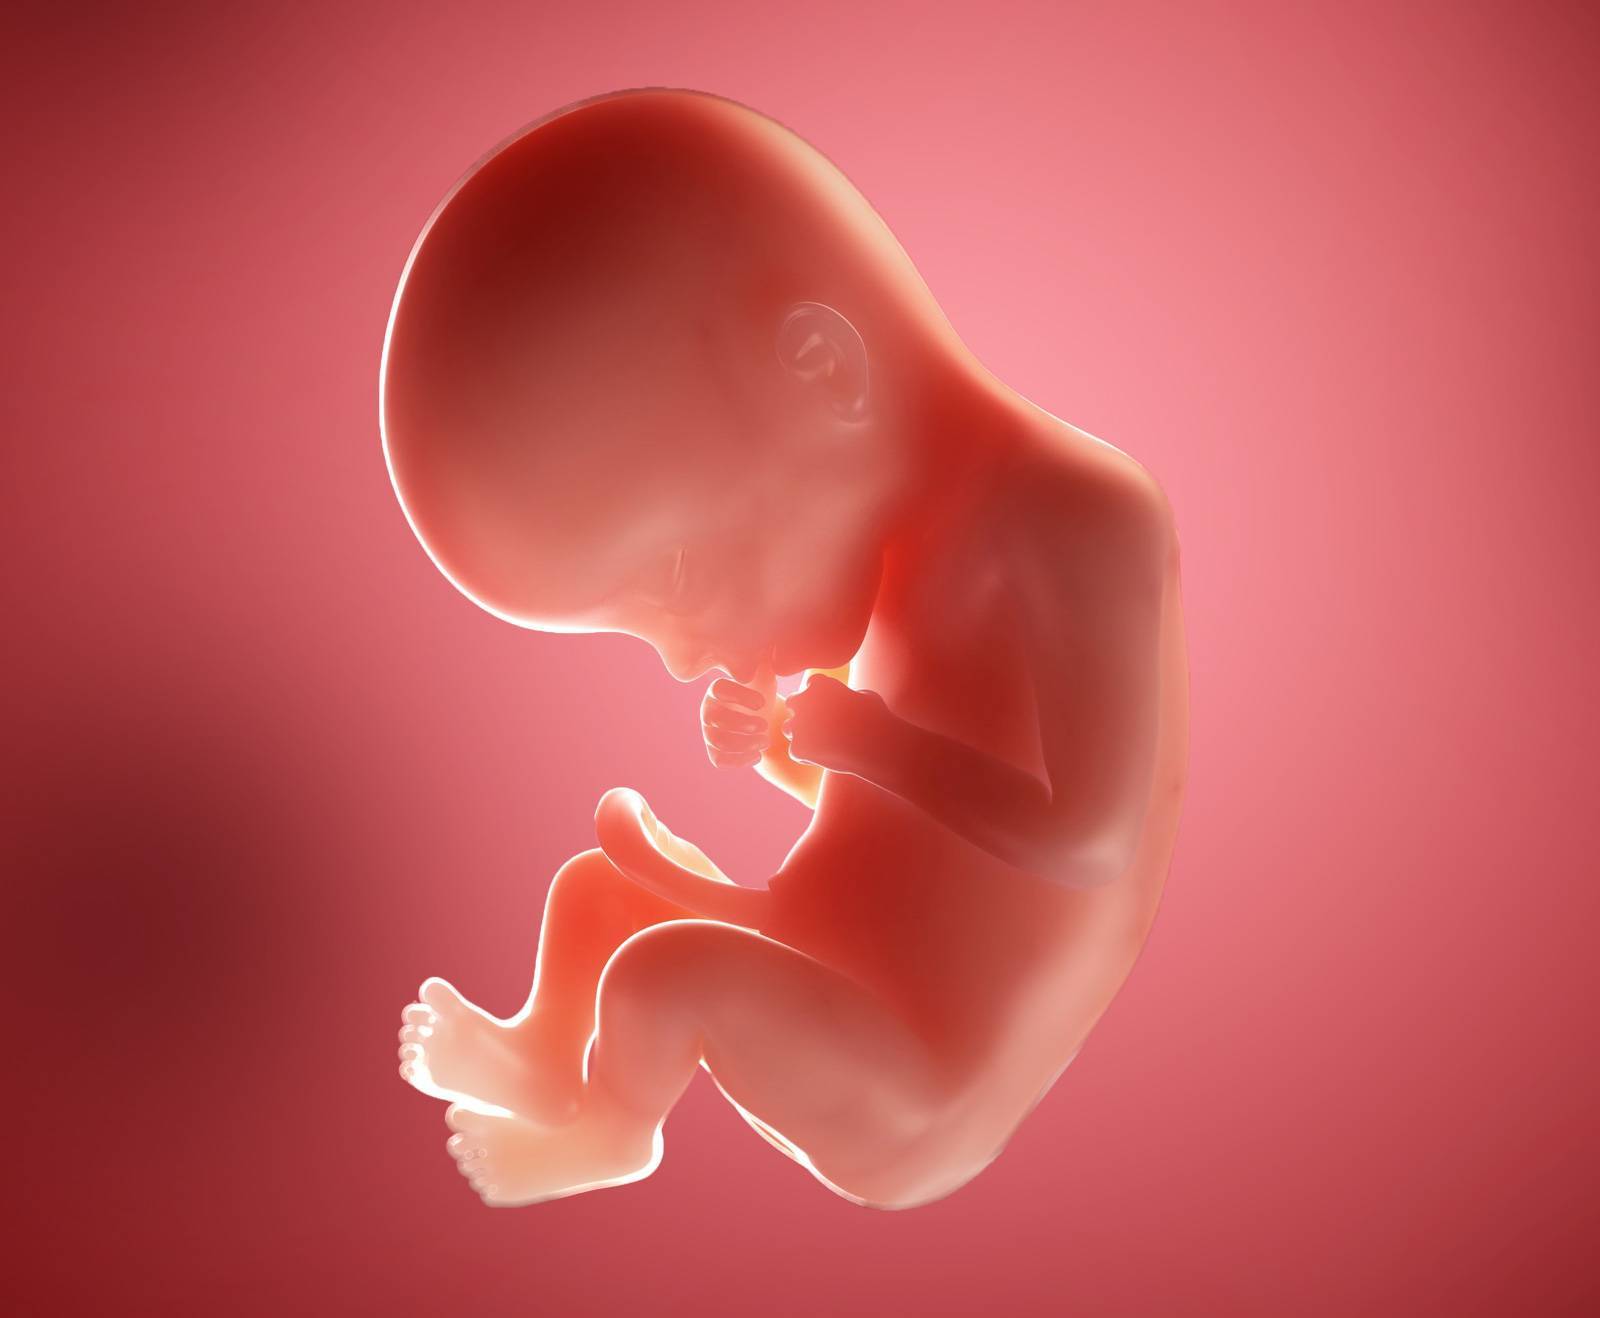 22 неделя беременности фото плода и ощущения — евромедклиник 24